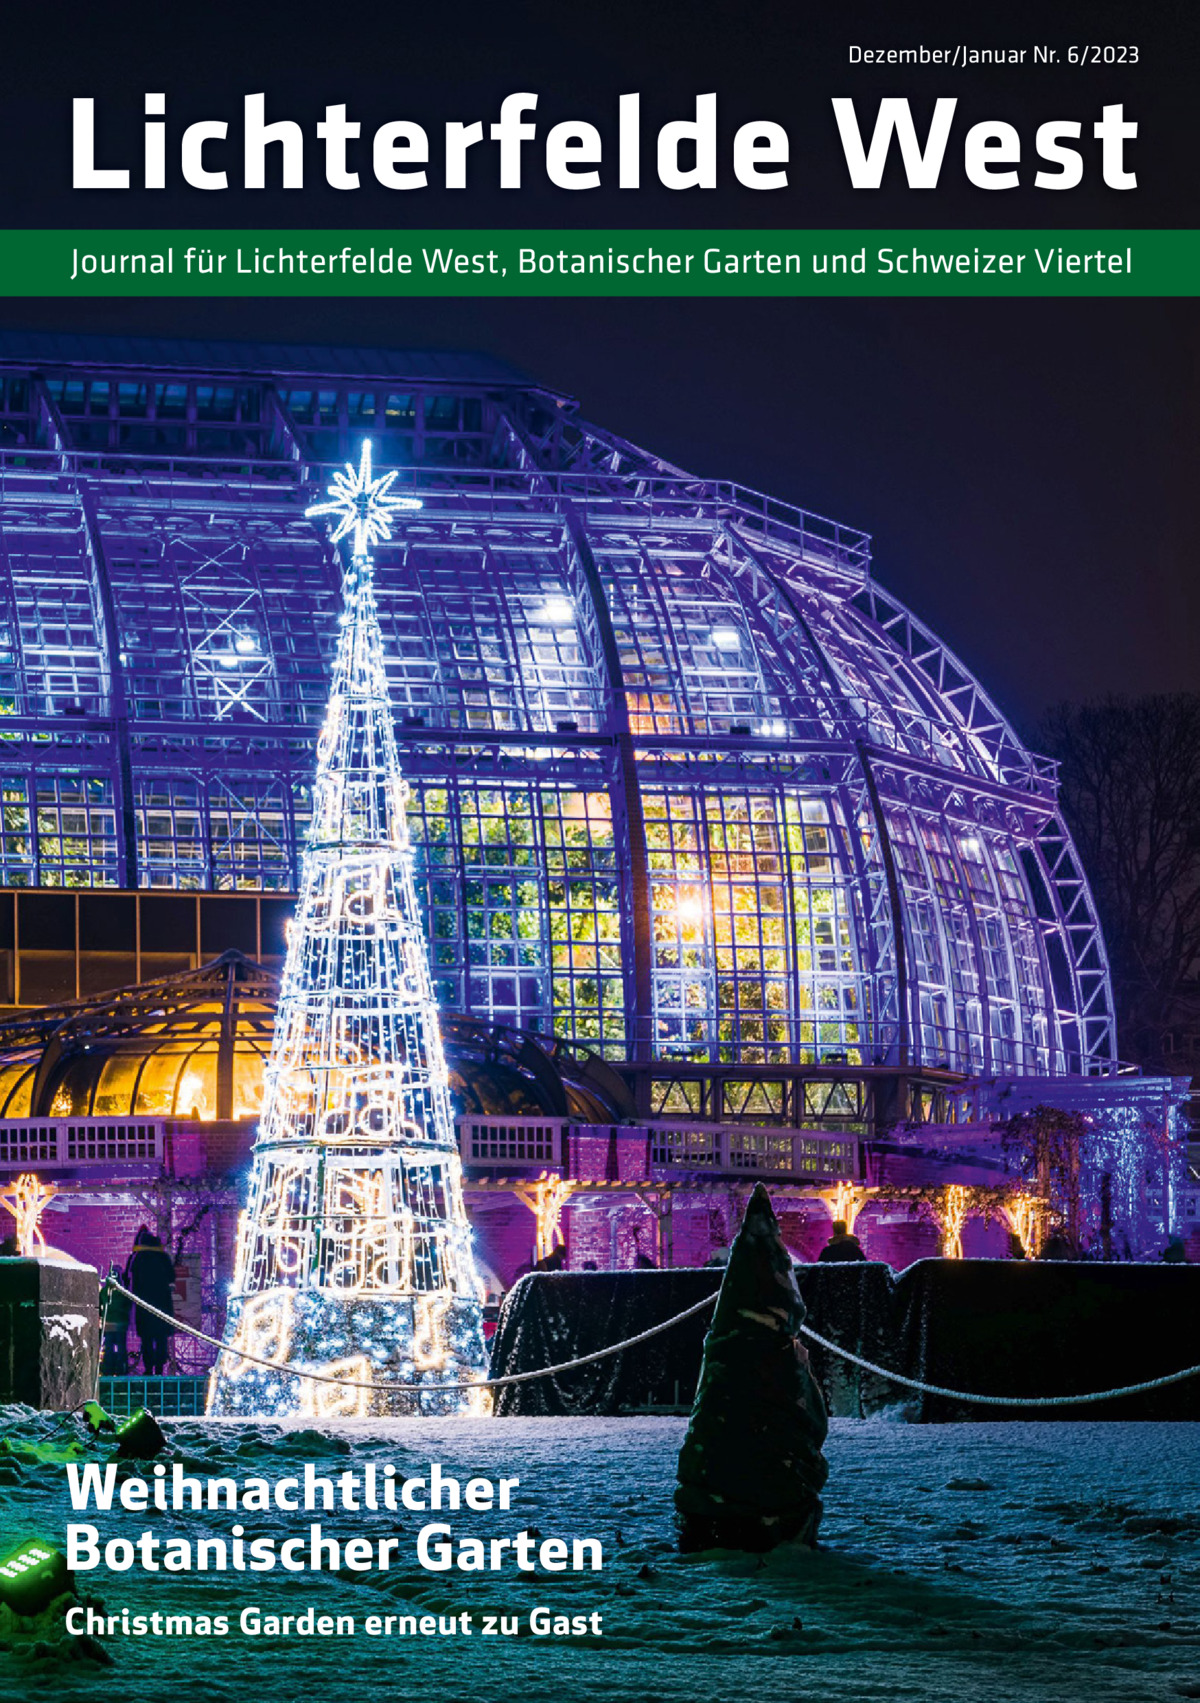 Dezember/Januar Nr. 6/2023  Lichterfelde West Journal für Lichterfelde West, Botanischer Garten und Schweizer Viertel  Weihnachtlicher Botanischer Garten Christmas Garden erneut zu Gast